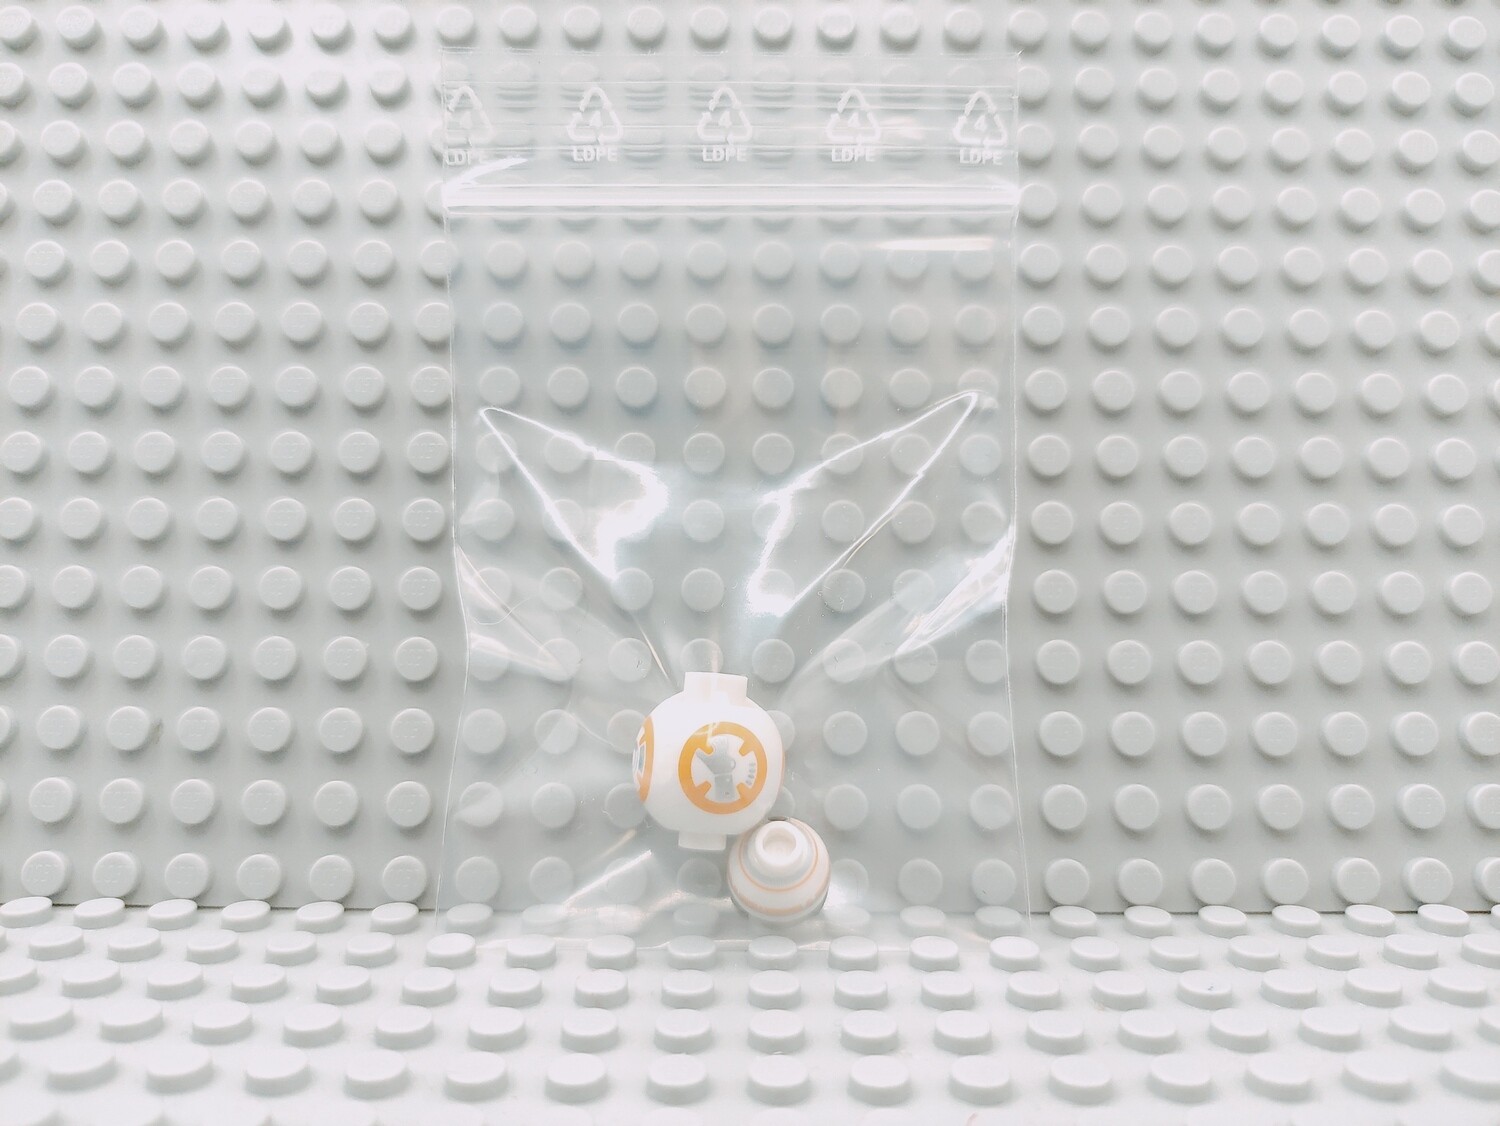 Lego Star Wars Minifigur BB-8